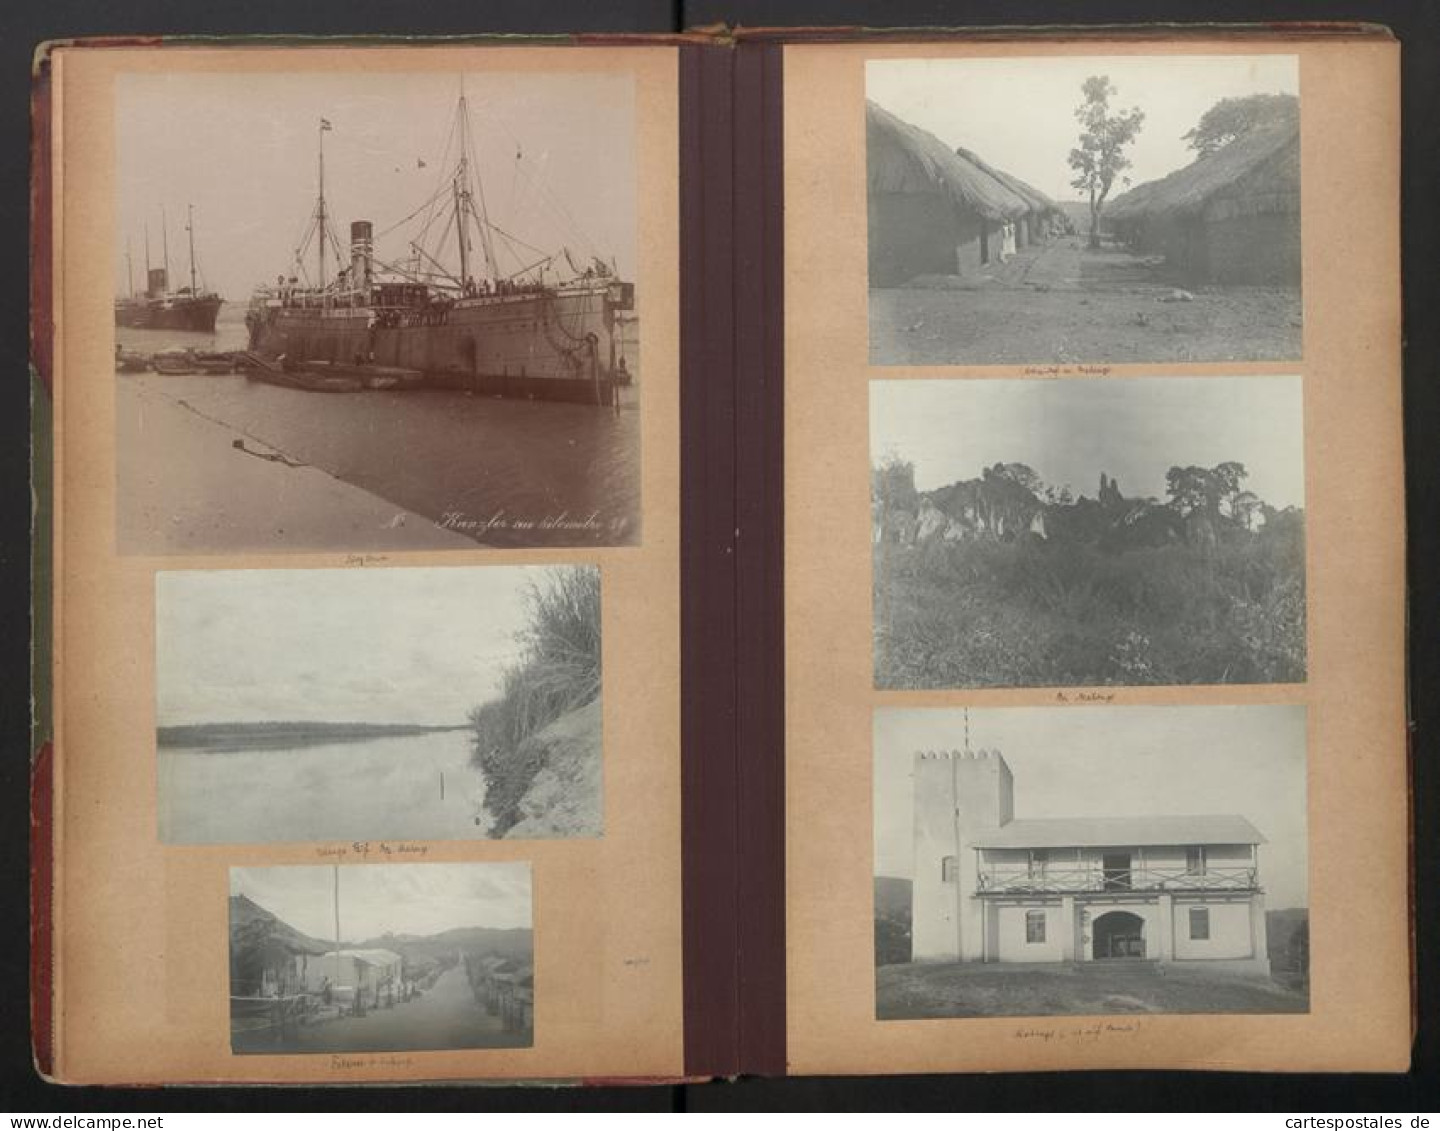 Fotoalbum Mit 280 Fotografien, DSWA Schutztruppe, Afrika, Oblt. Von Grawert, Hauptmann Von Fiedler, Zanzibar, Durban  - Albums & Collections